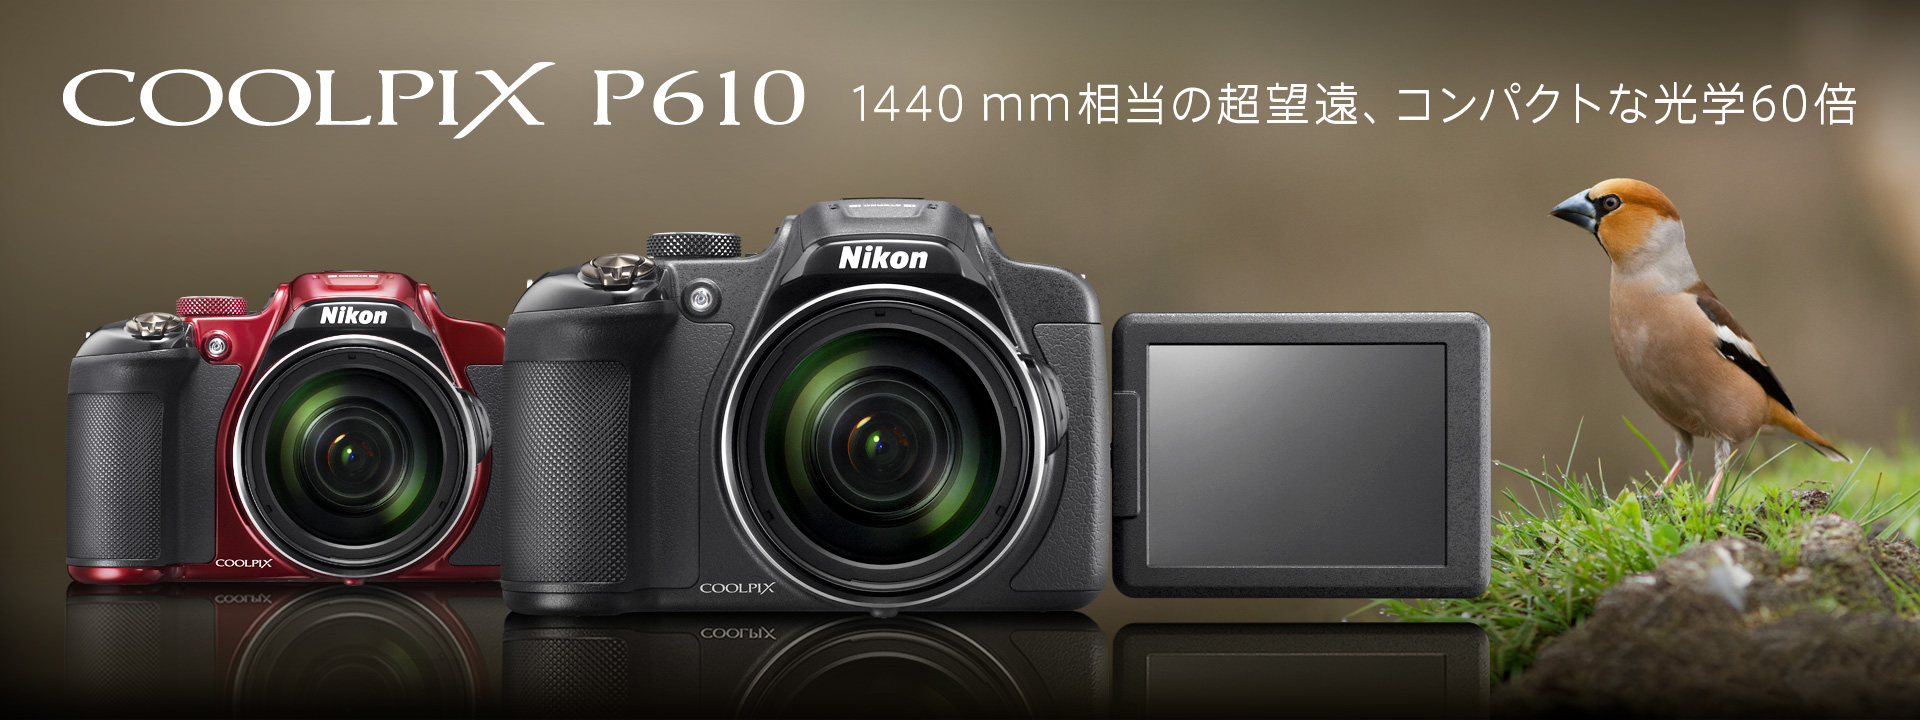 カメラ デジタルカメラ COOLPIX P610 - 概要 | コンパクトデジタルカメラ | ニコンイメージング